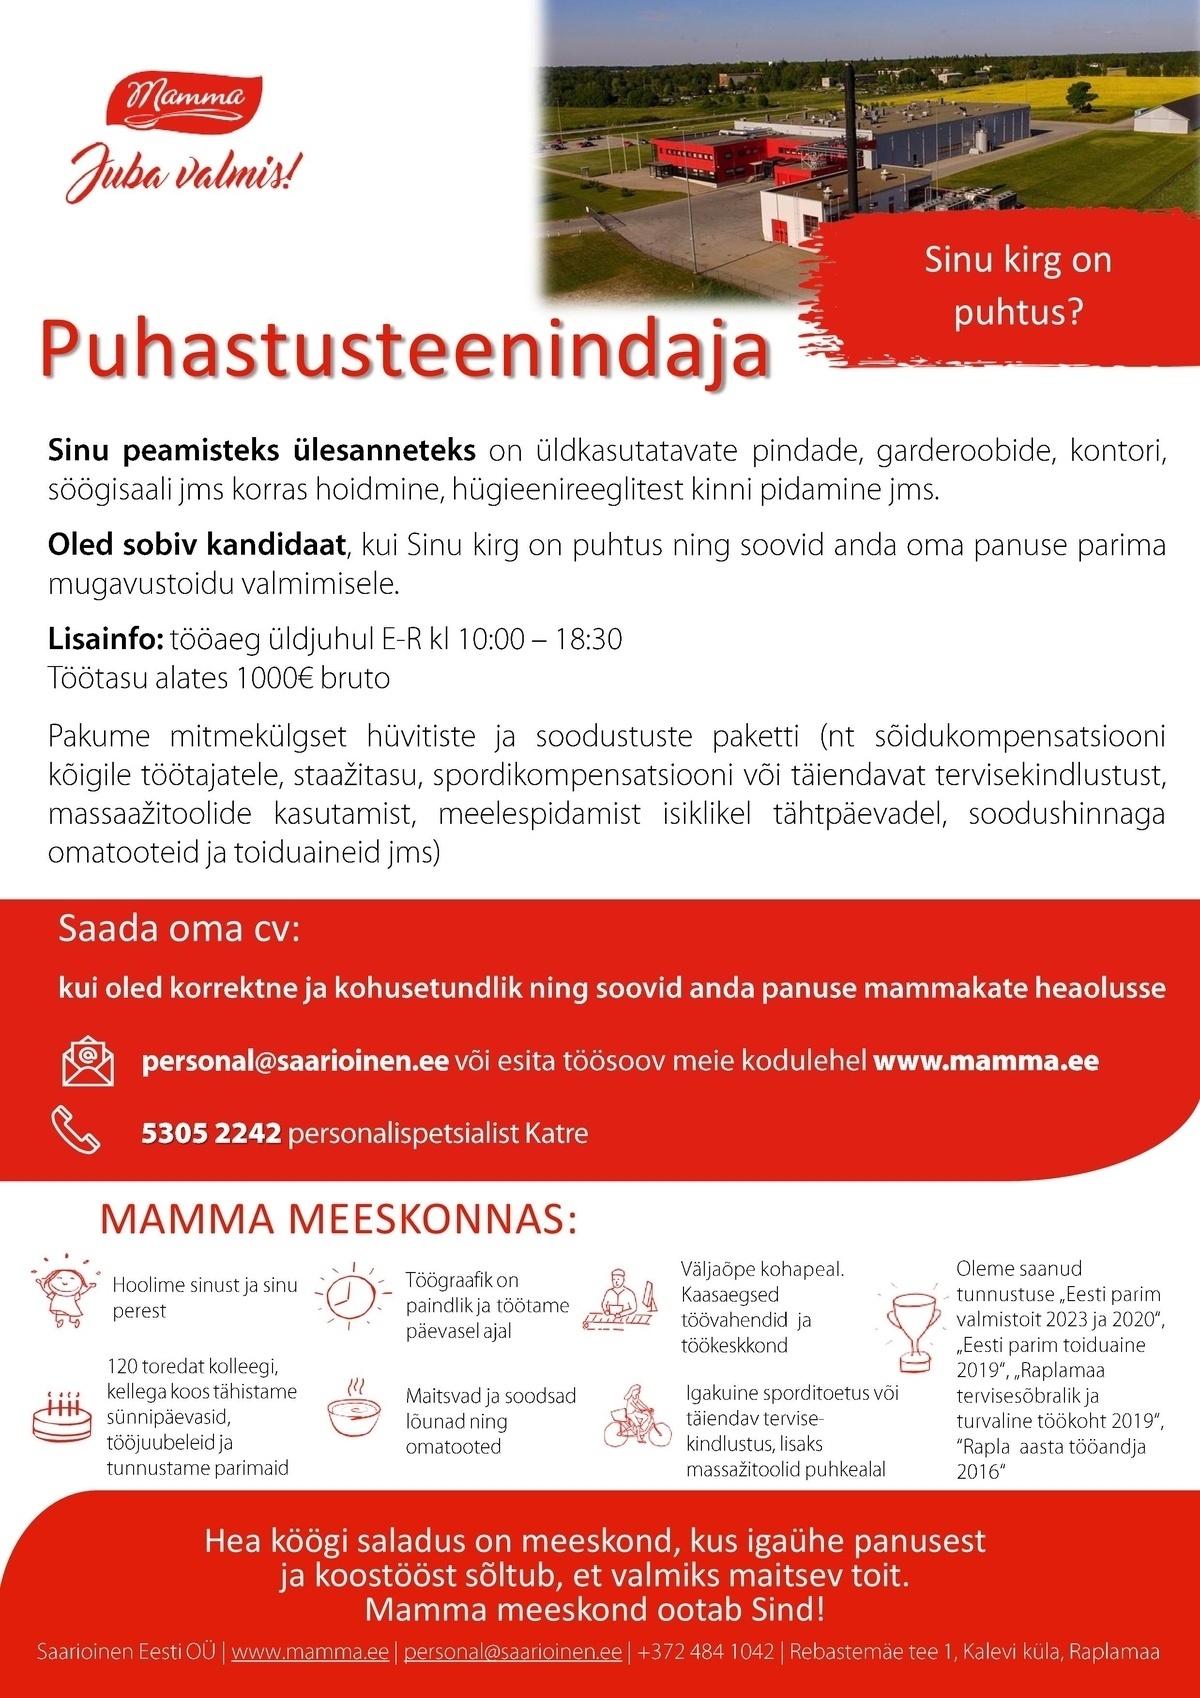 Saarioinen Eesti OÜ Puhastusteenindaja